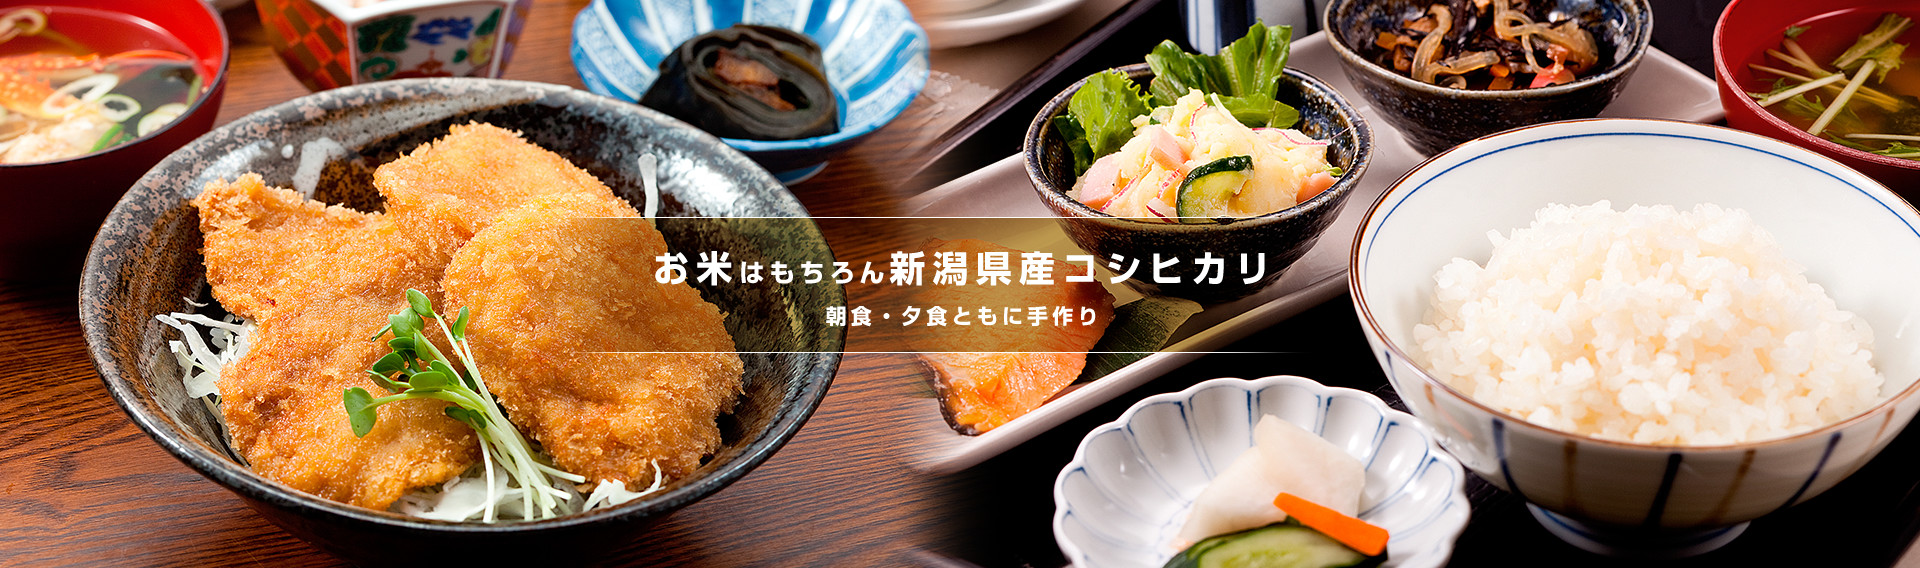 お米はもちろん新潟県産コシヒカリ 朝食・夕食ともに手作り